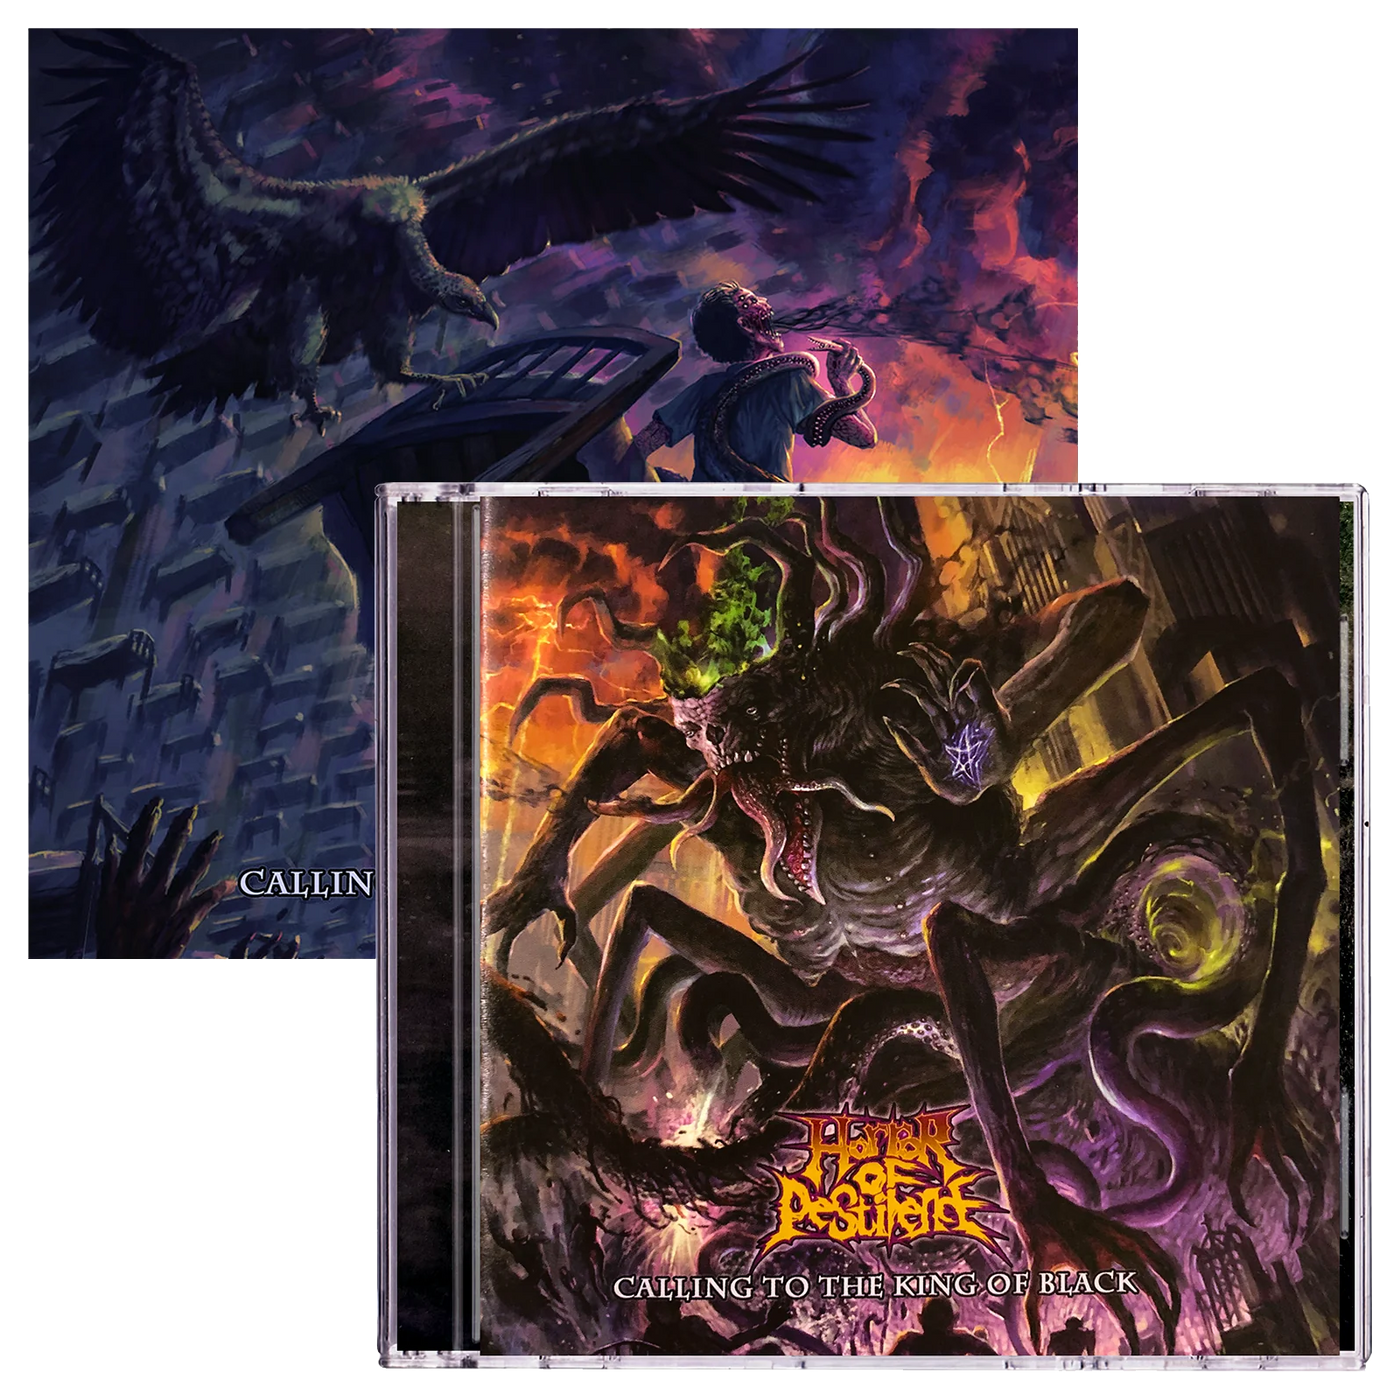 Horror of Pestilence 'Calling to the King of Black' CD